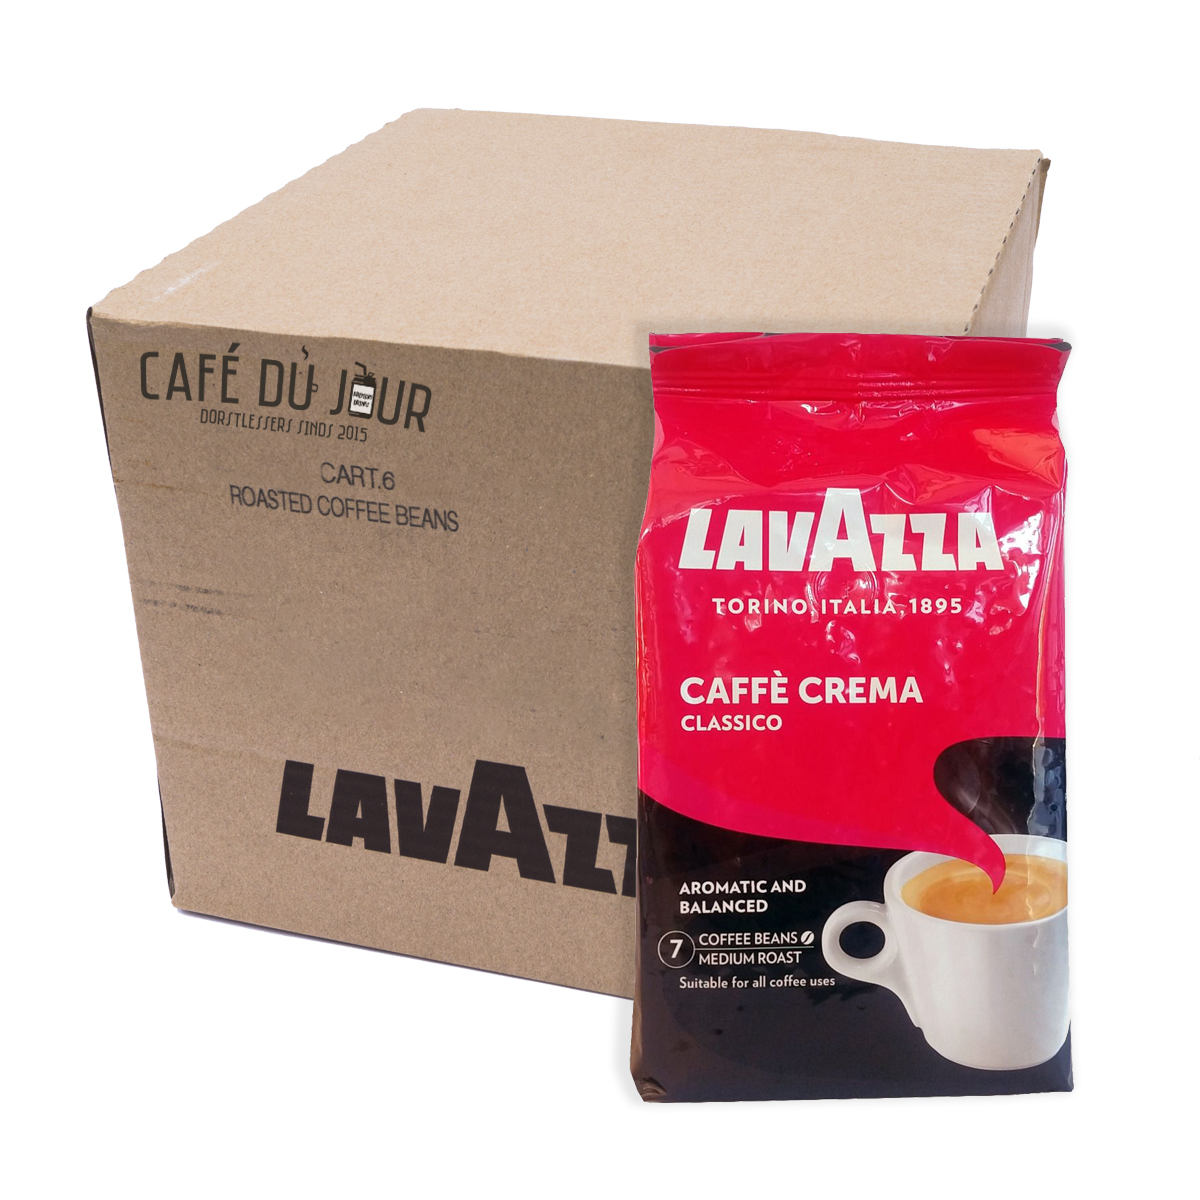 Lavazza Caffe Crema Classico koffiebonen 6 X 1 kilo